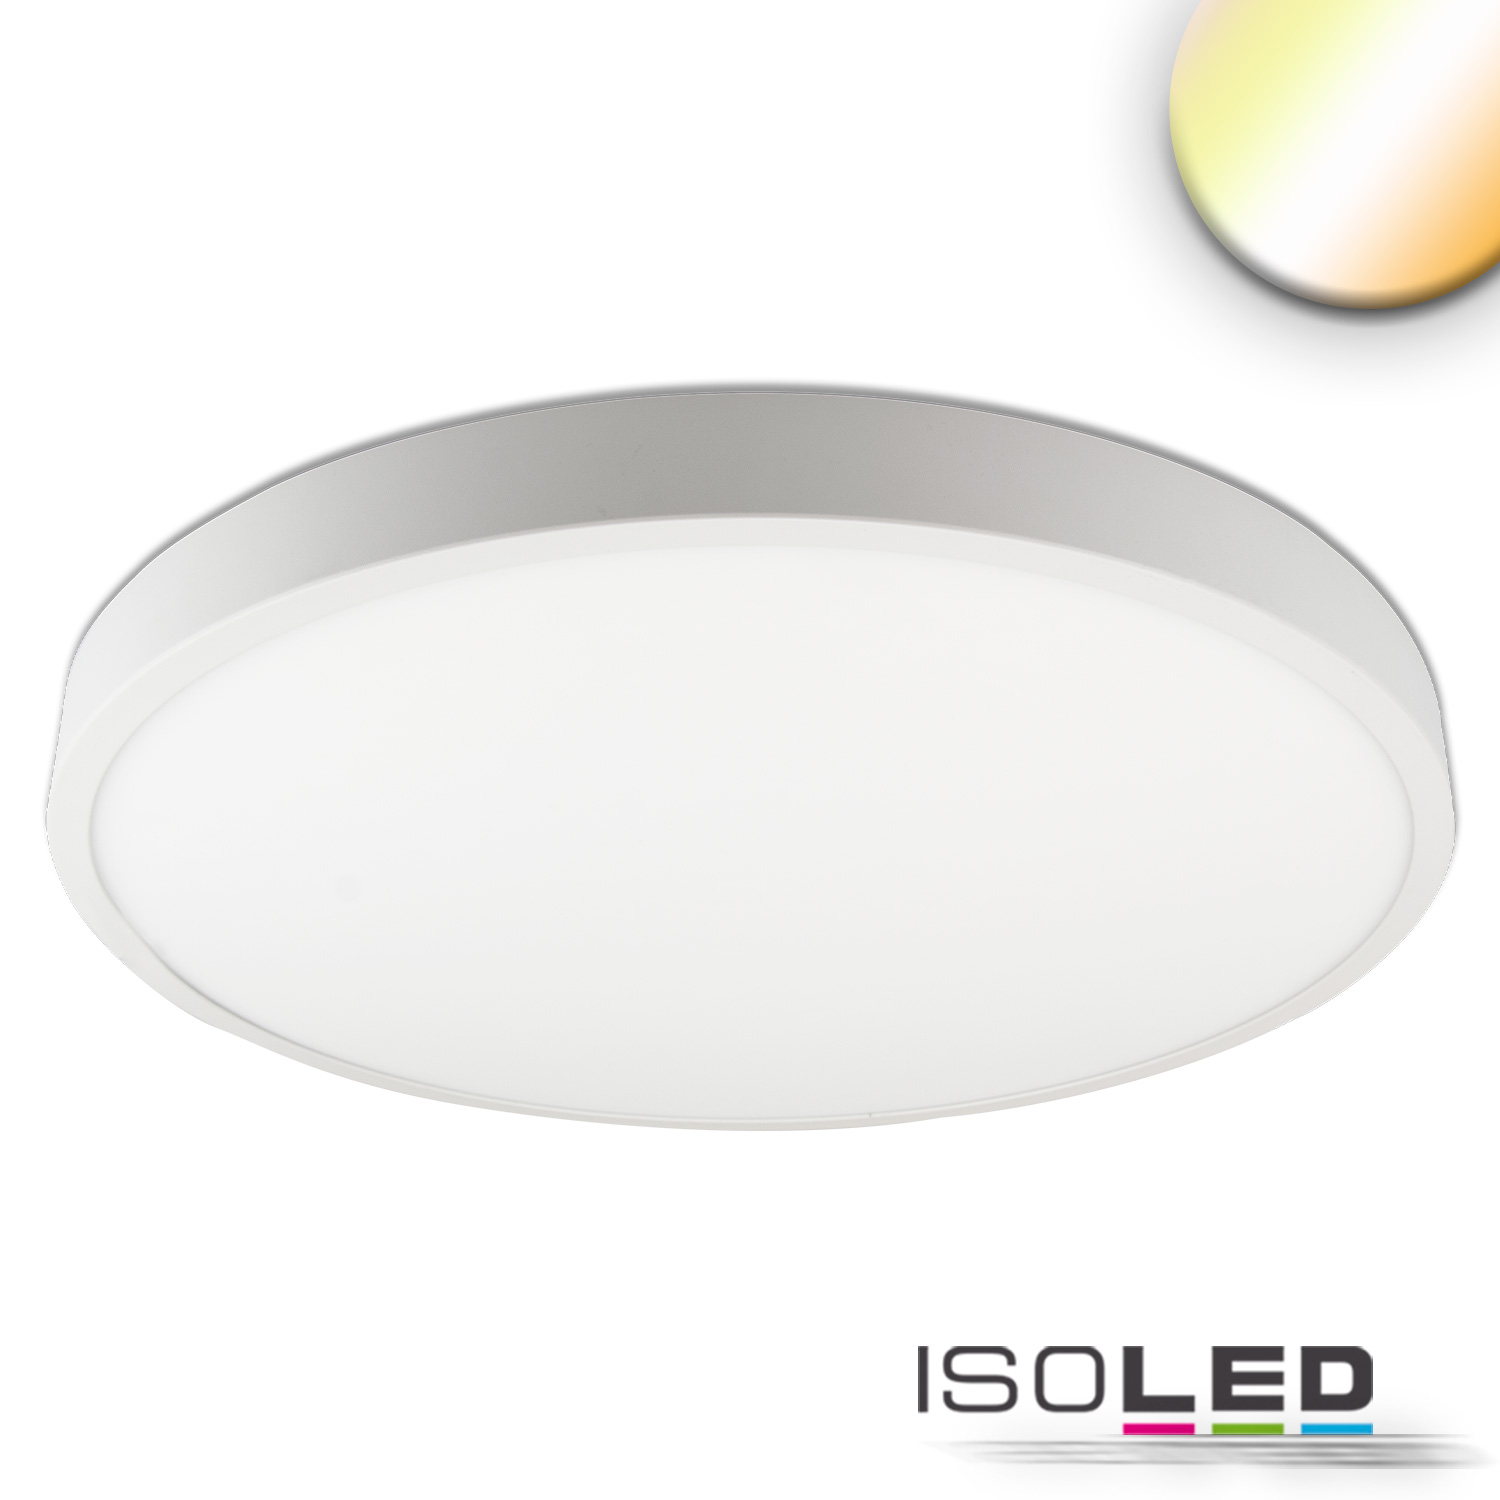 ISOLED 115201 LED Deckenleuchte PRO weiß, 36W, rund, 500mm, ColorSwitch 2700K|3000K|4000K, dimmbar